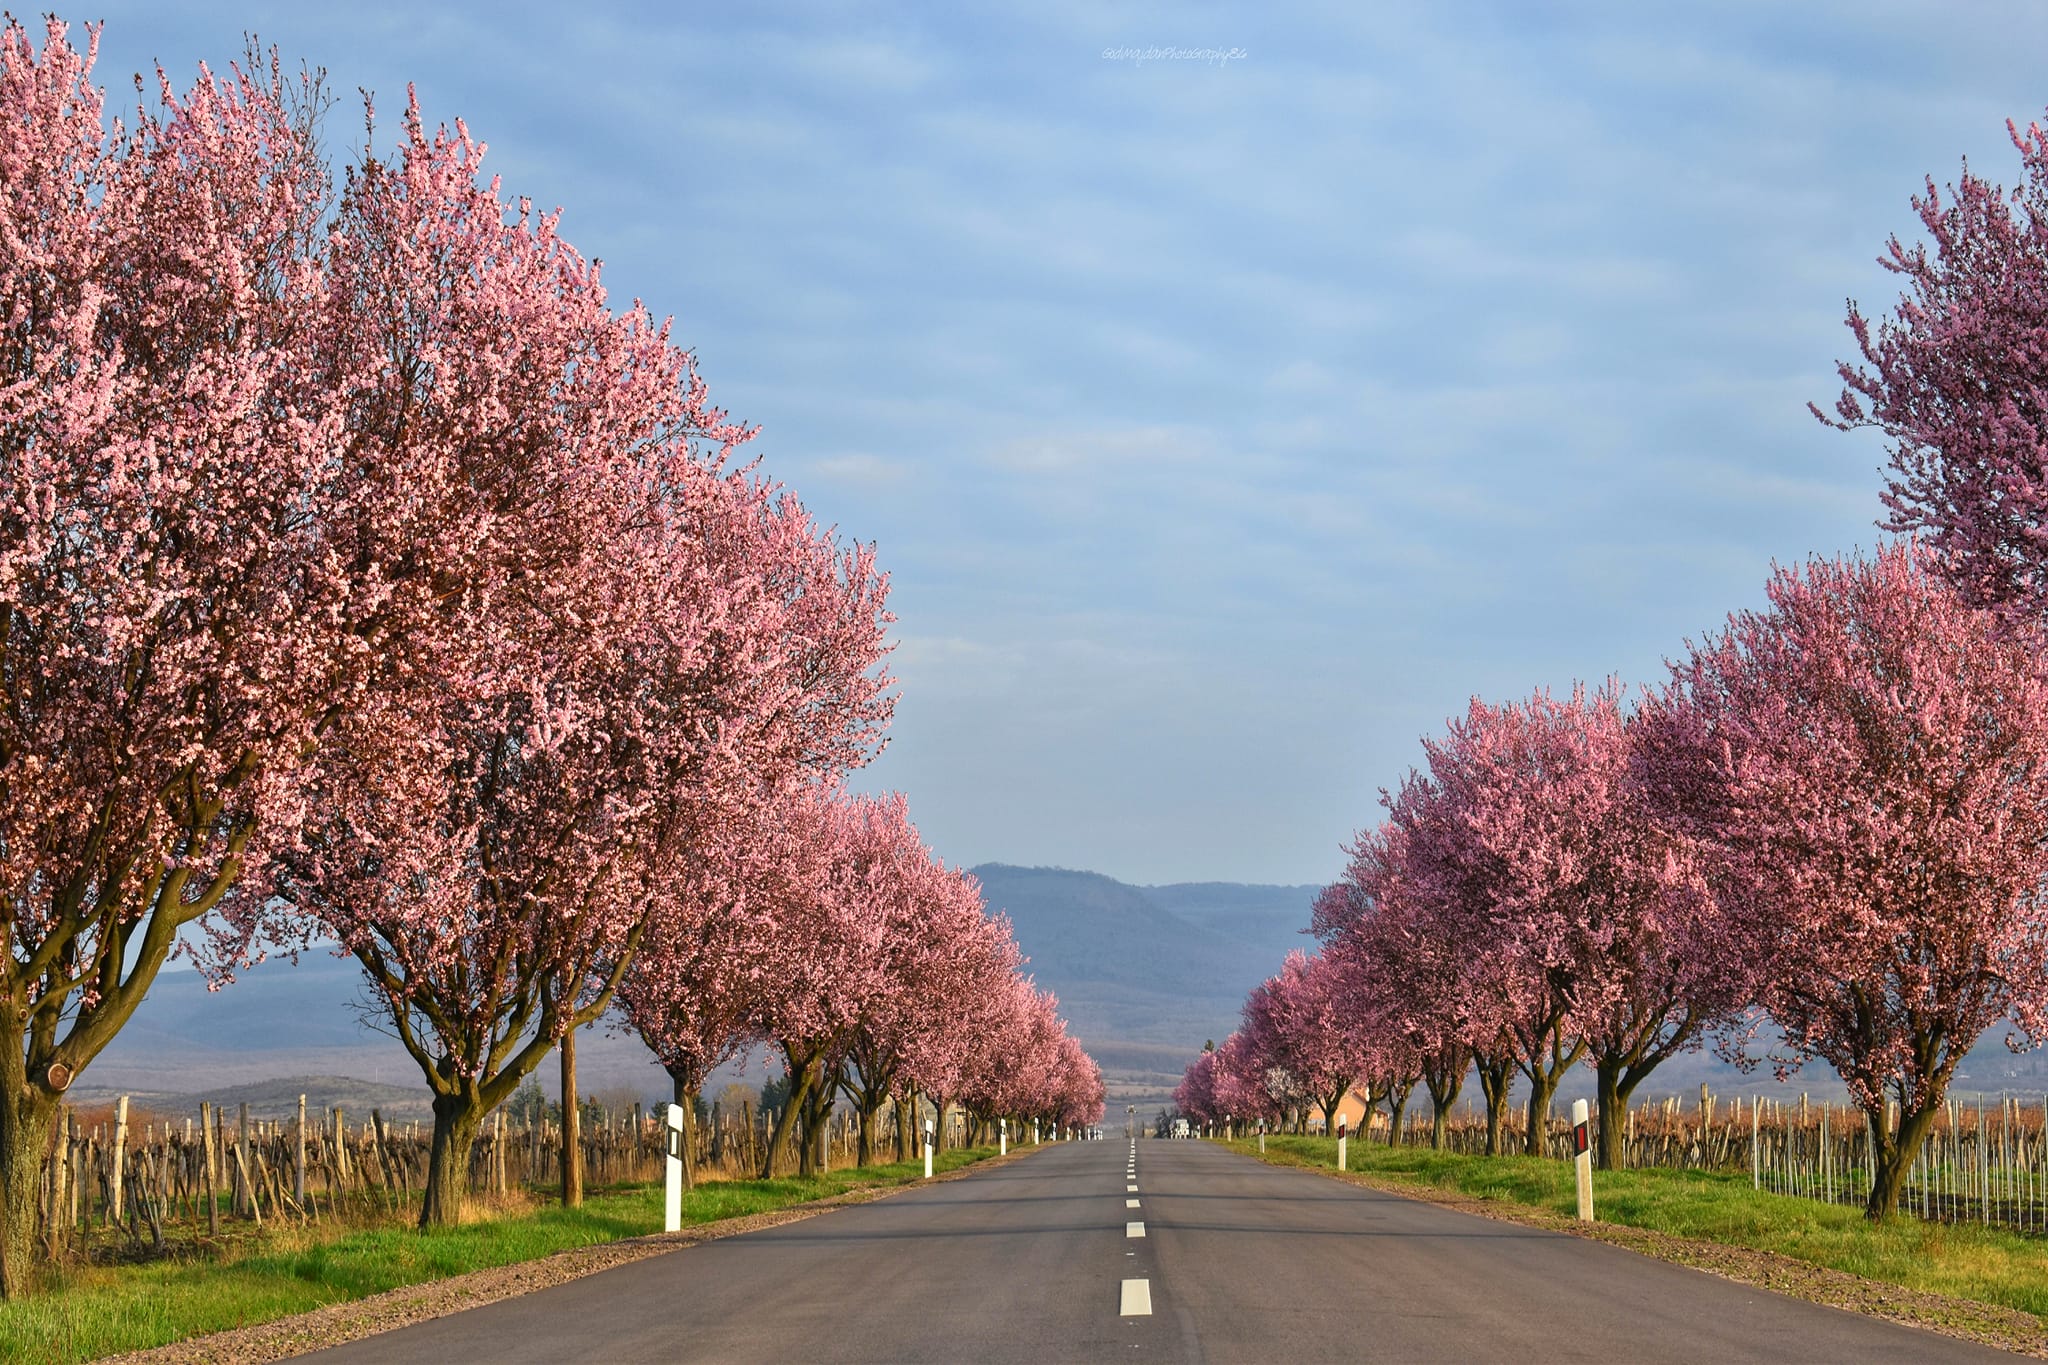 Meseszép látványt nyújtanak a magyar falu virágzó vérszilvafái